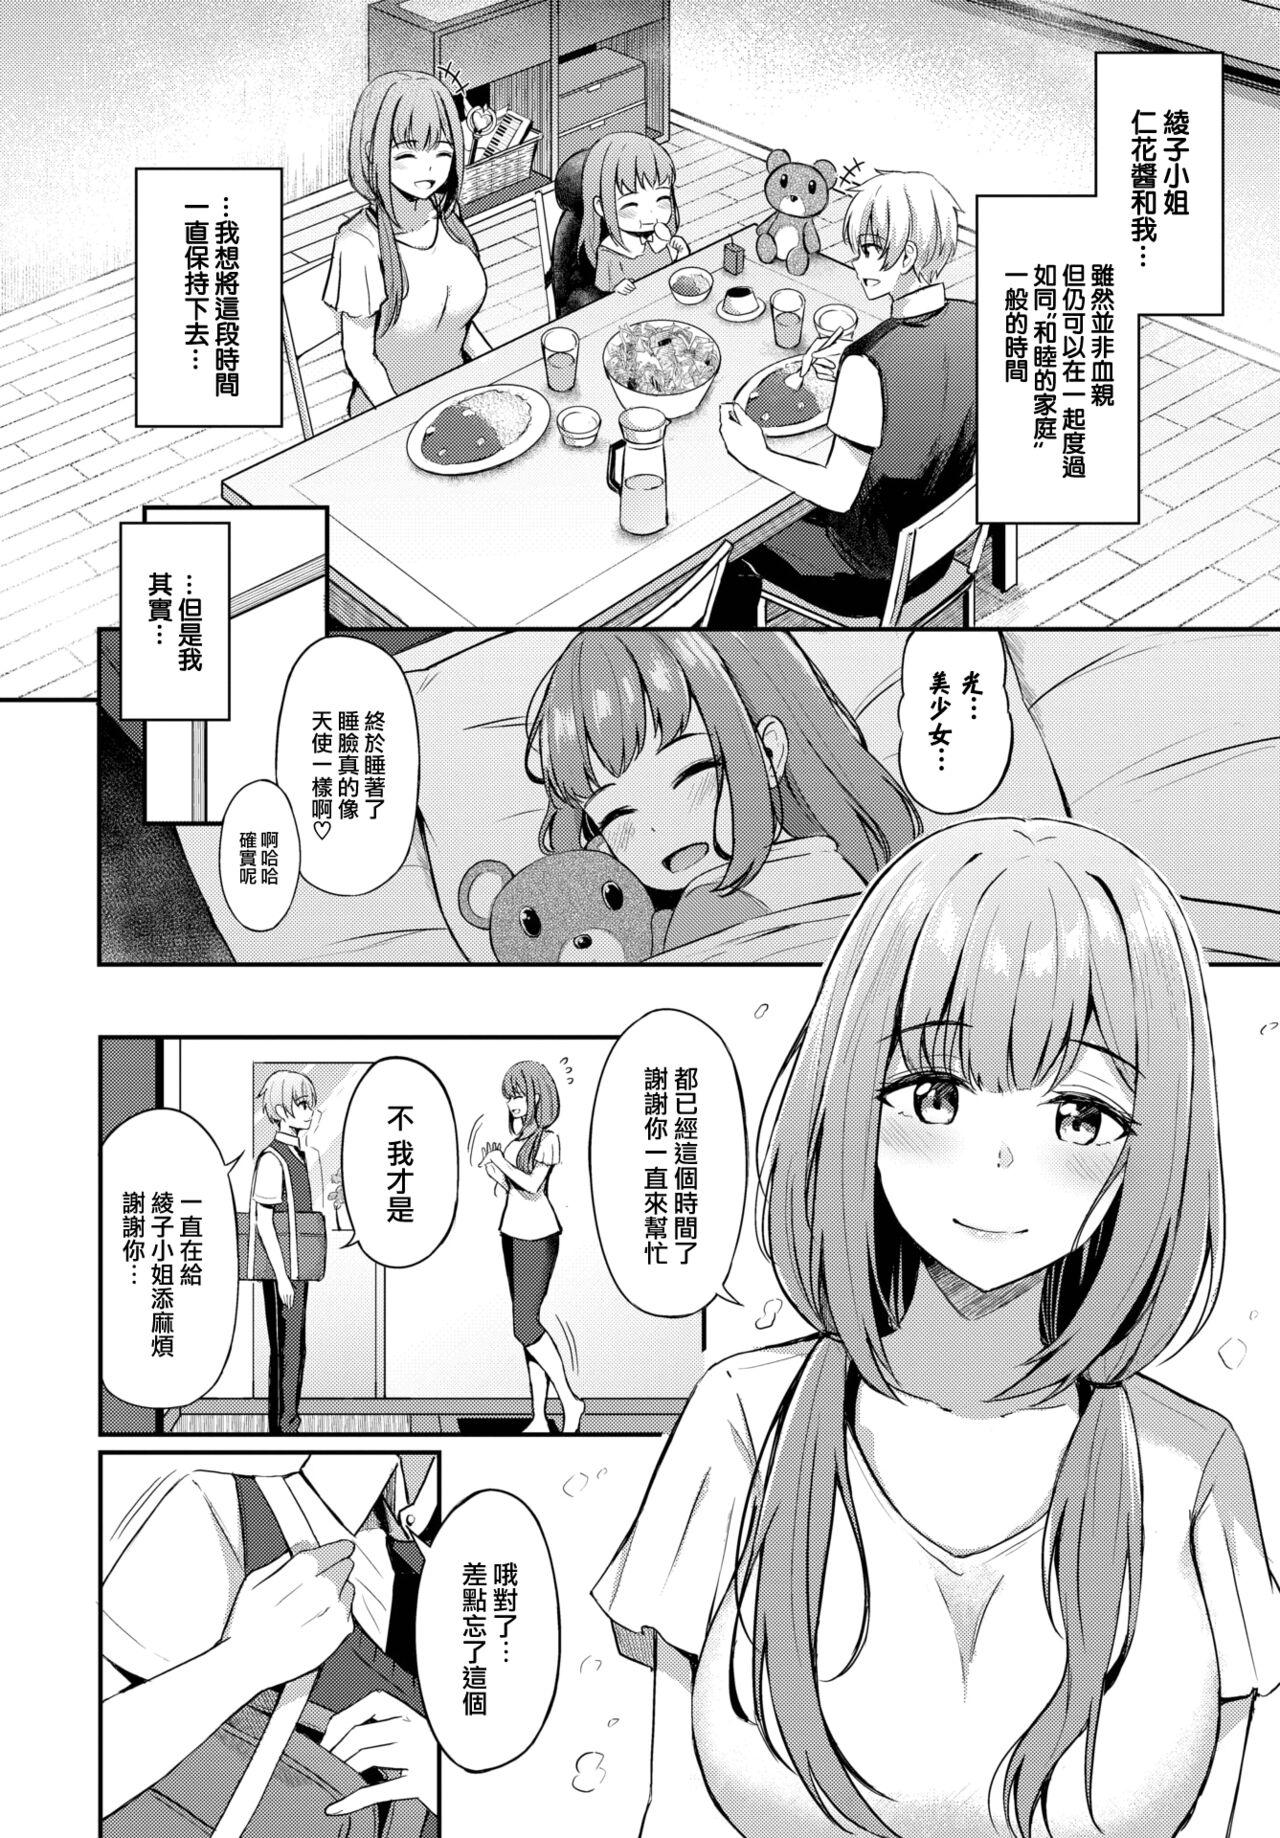 Threesome Toshiue no ohimesama♥ Bdsm - Page 5